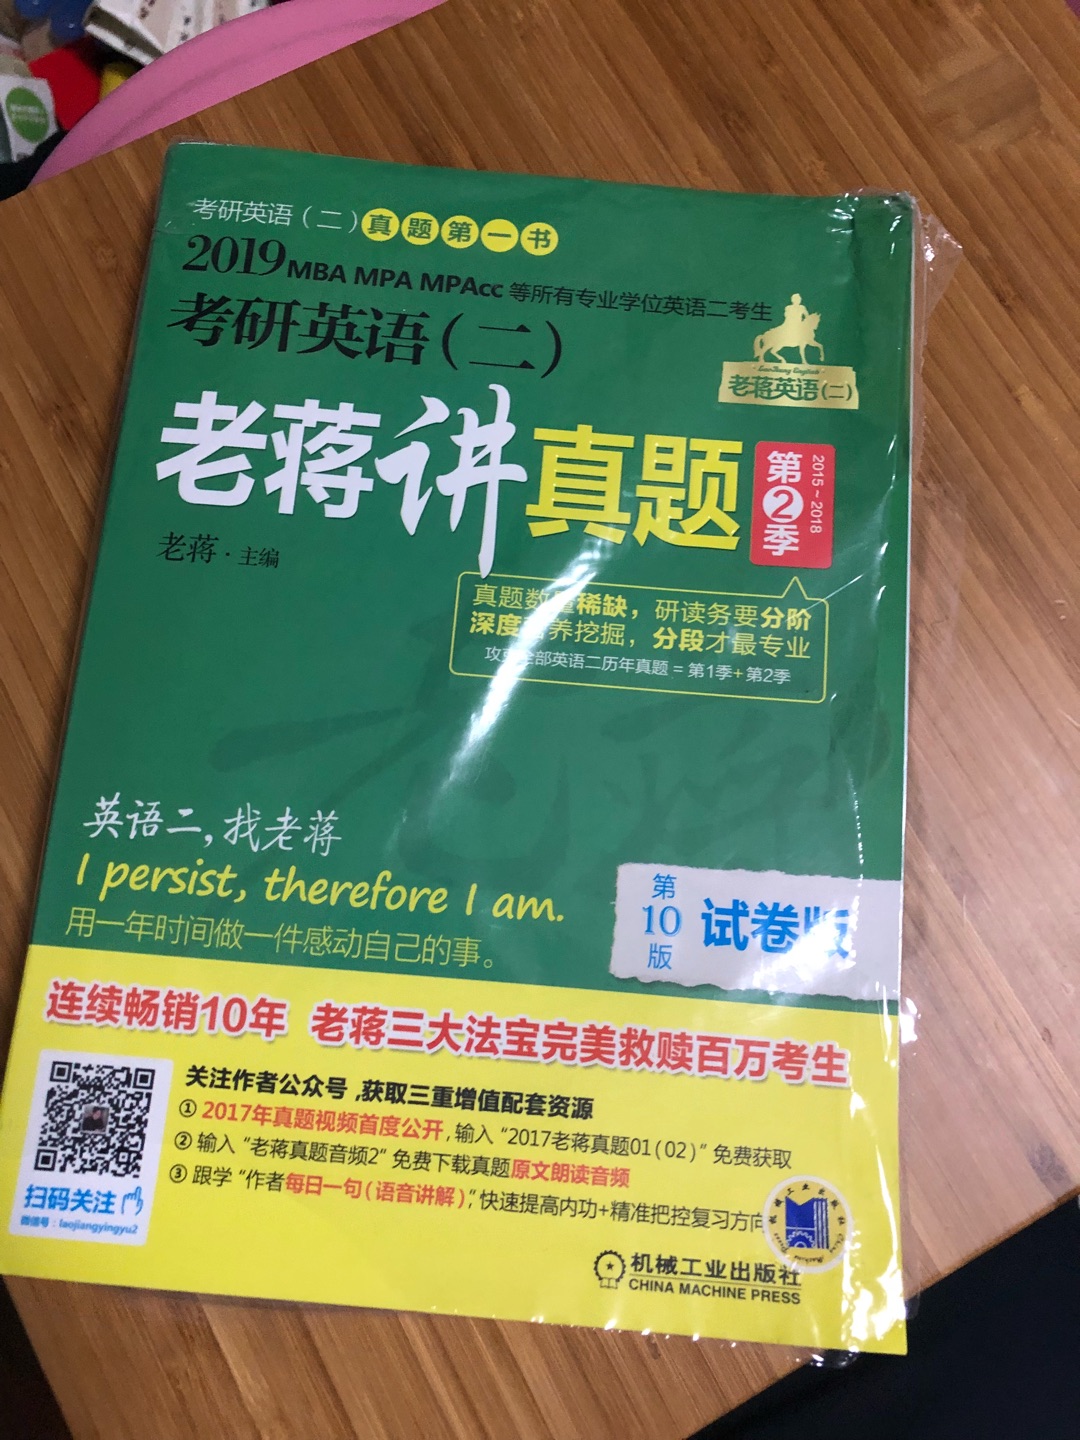 包装简陋 就一个快递袋 问题是省外发到广州舟车劳顿 书本还是会不堪重负 卷卷曲曲了